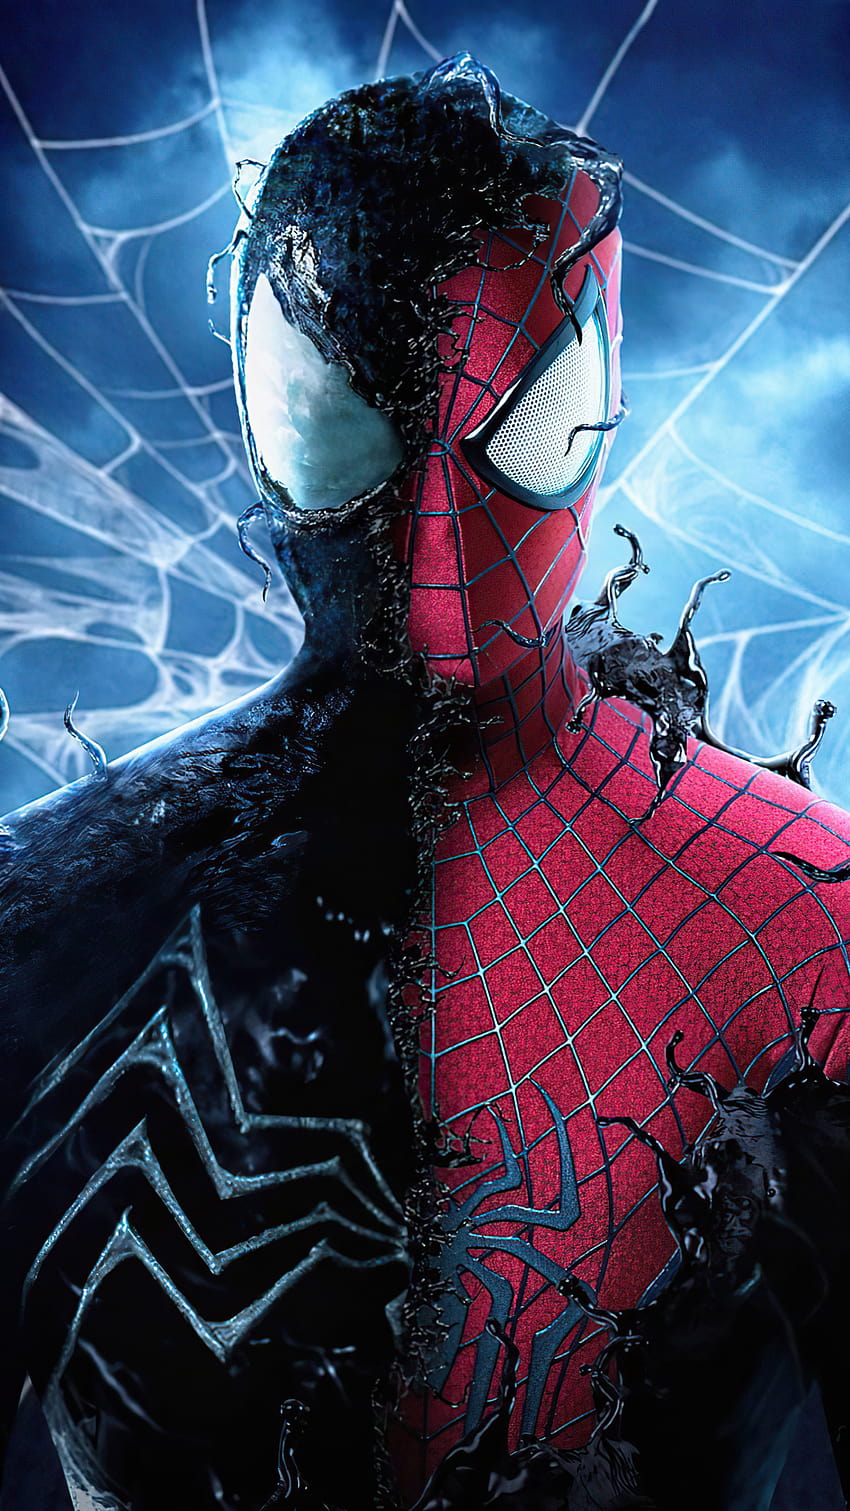 1080x1920 Spider Man mit dem Symbiote Iphone 7,6s,6 Plus, Pixel xl, One Plus 3,3t,5, Hintergründen und einem symbiotischen Spider-Man-Anzug HD-Handy-Hintergrundbild